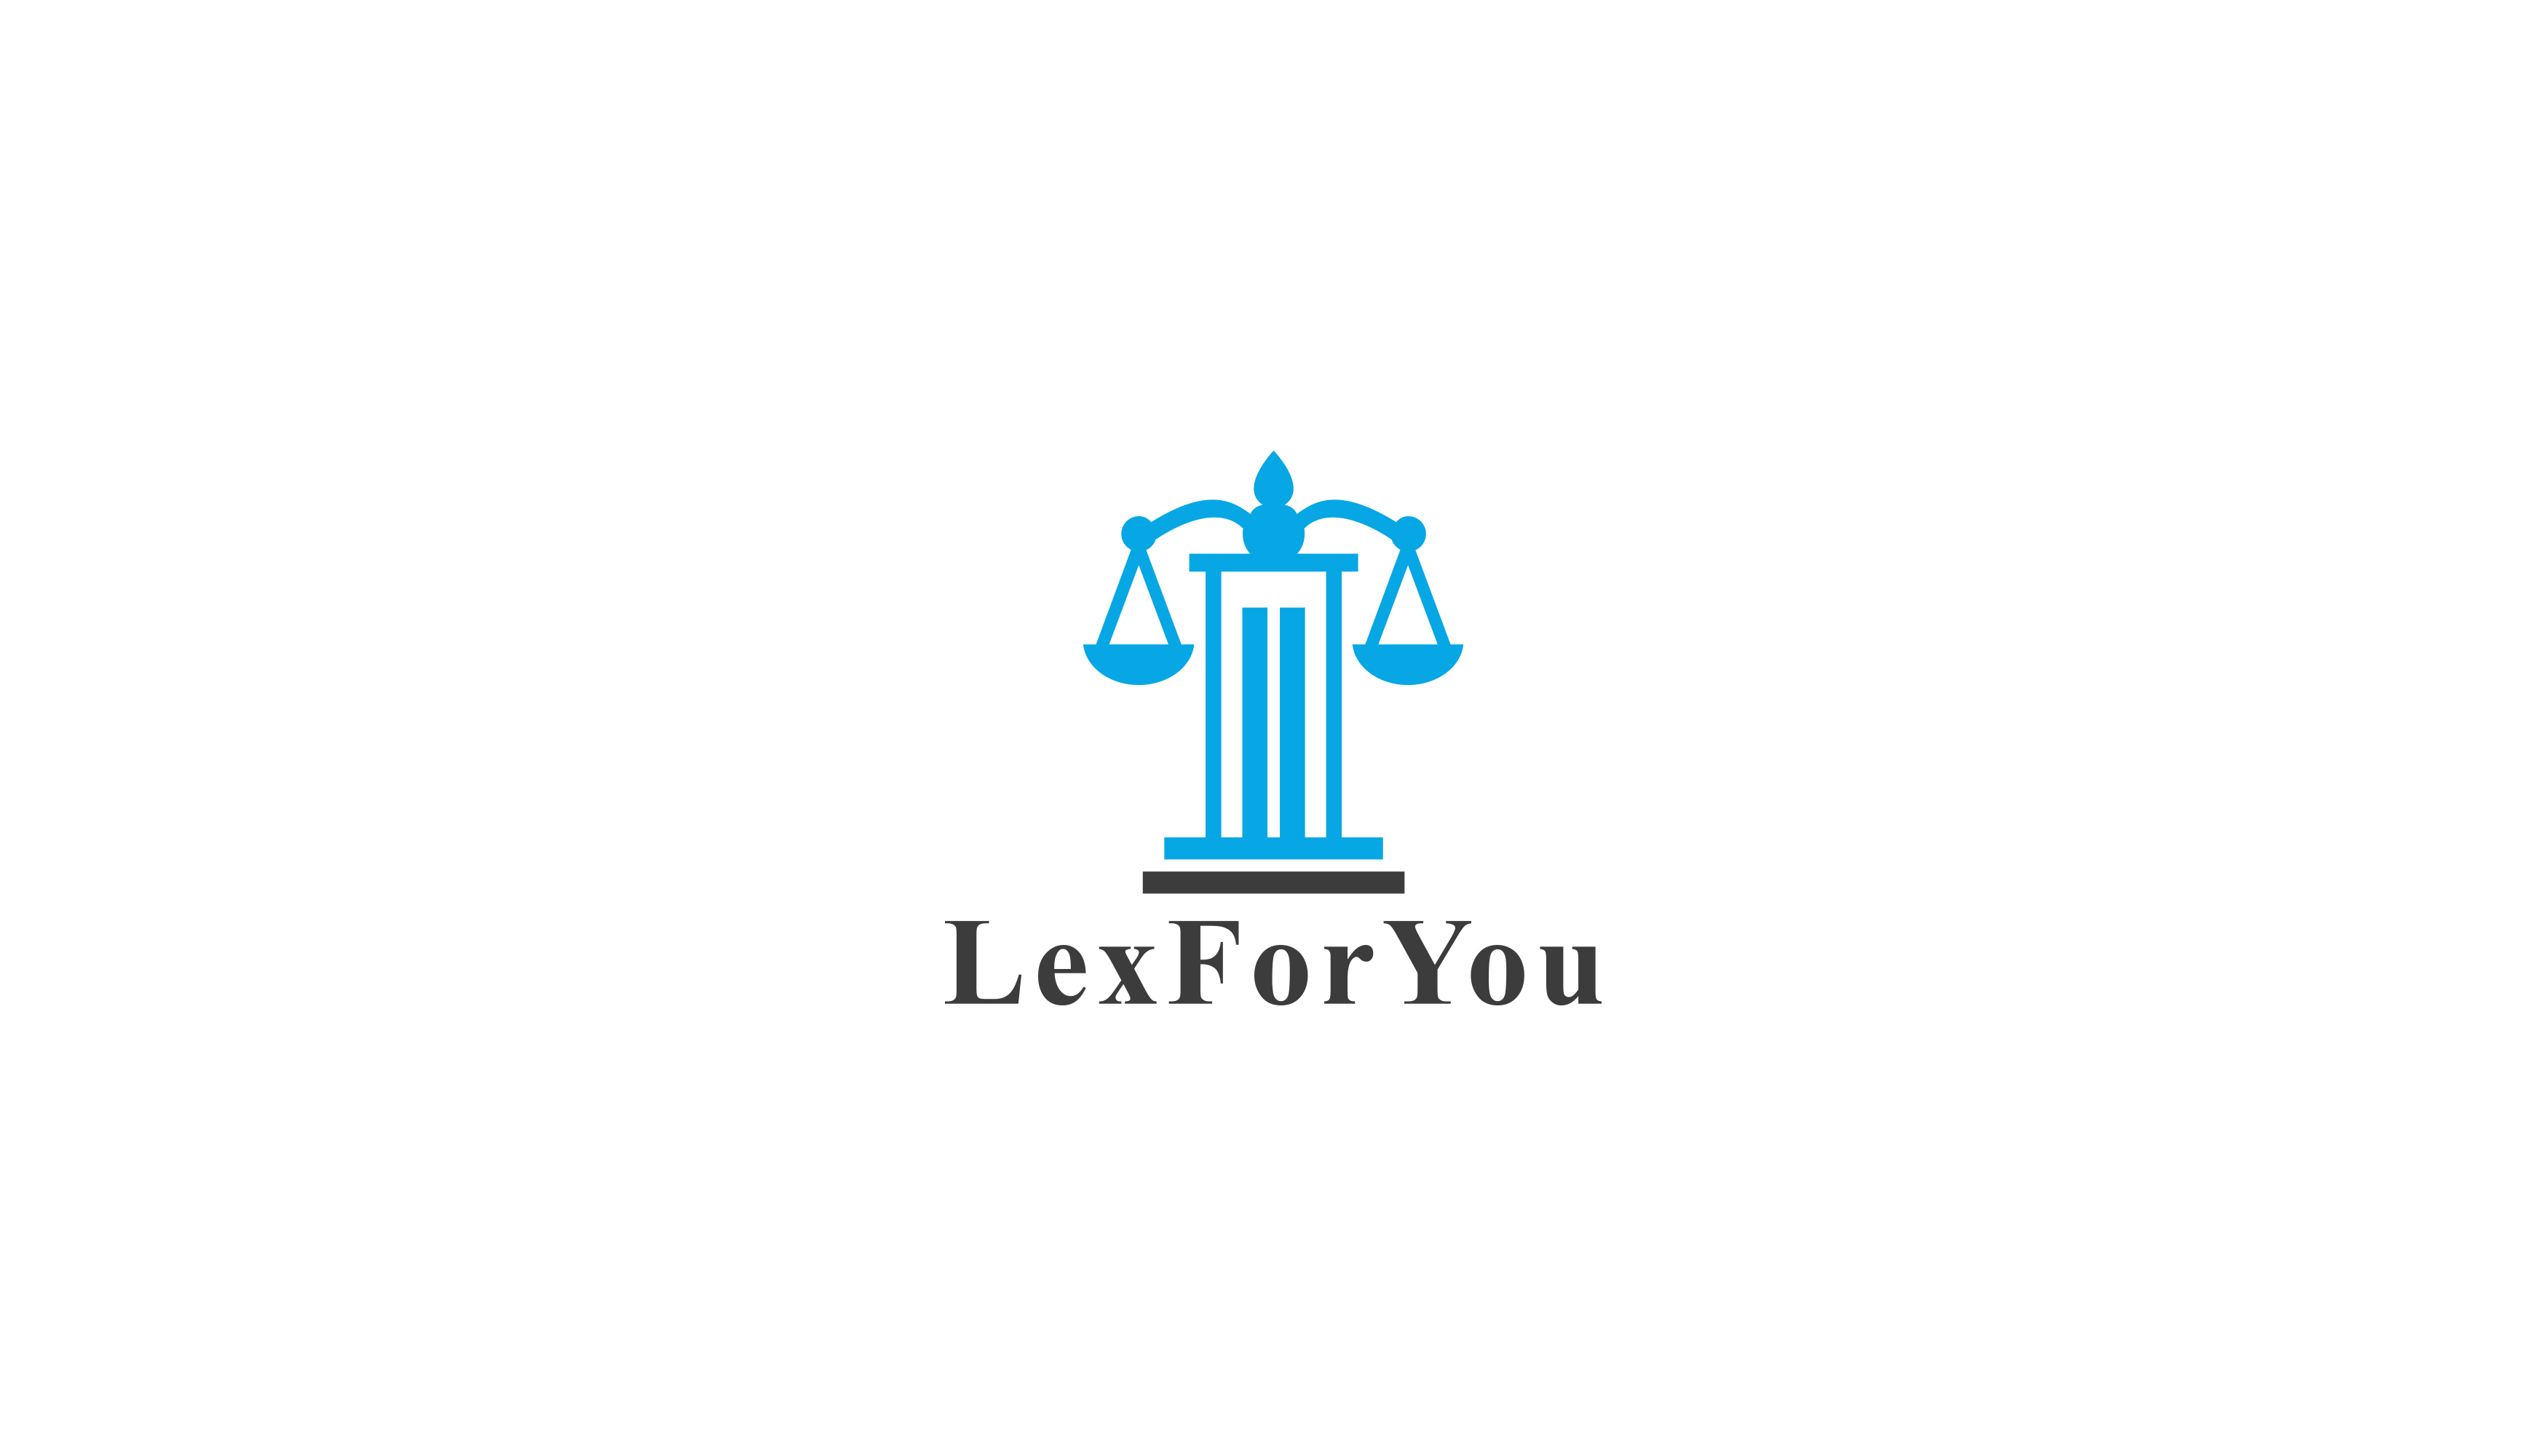 Lex For You Design #5